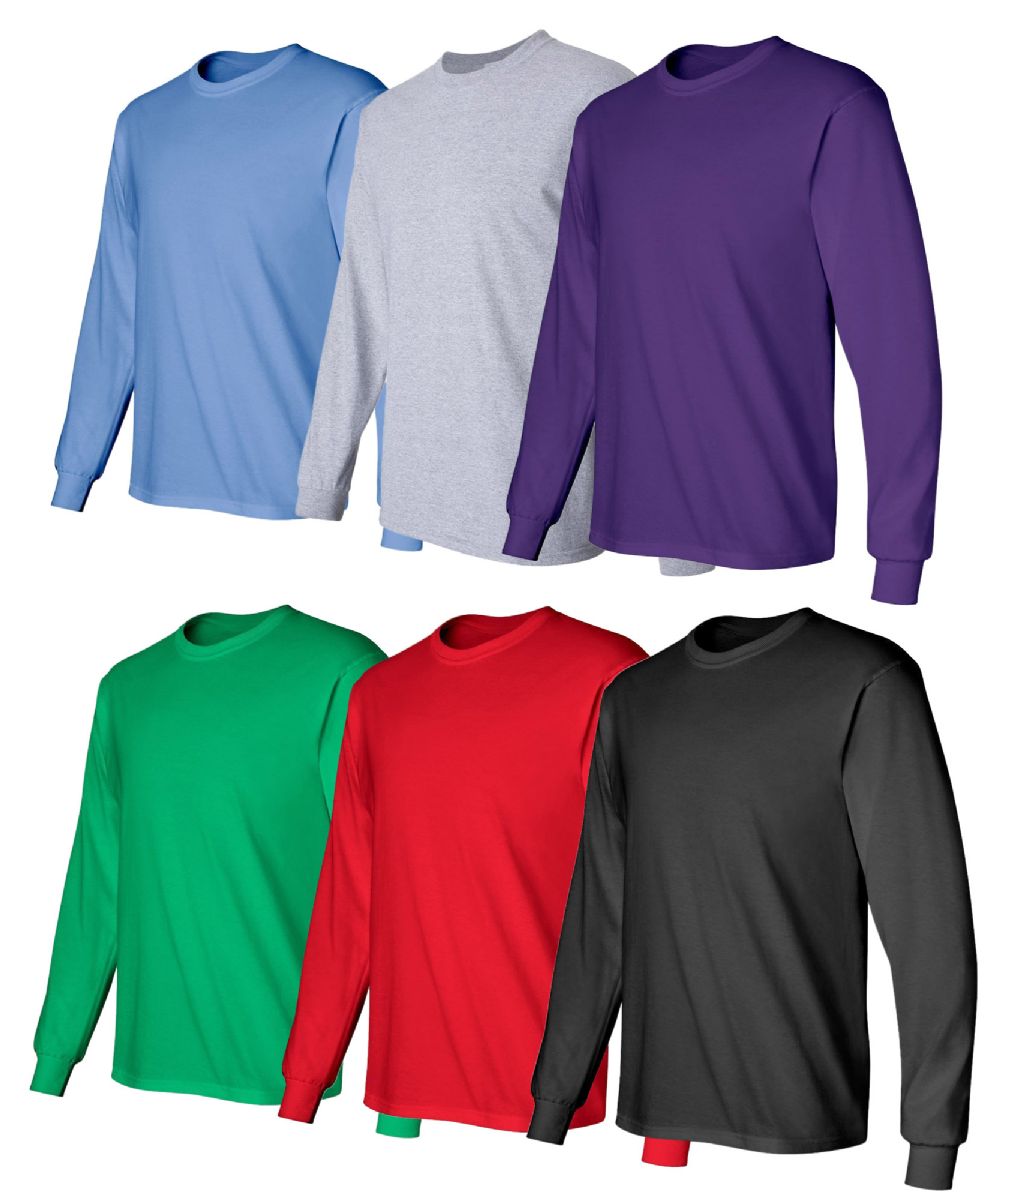 6 Wholesale Billionhats Mens Assorted Color Long Sleeve T-Shirt Size 5xlarge